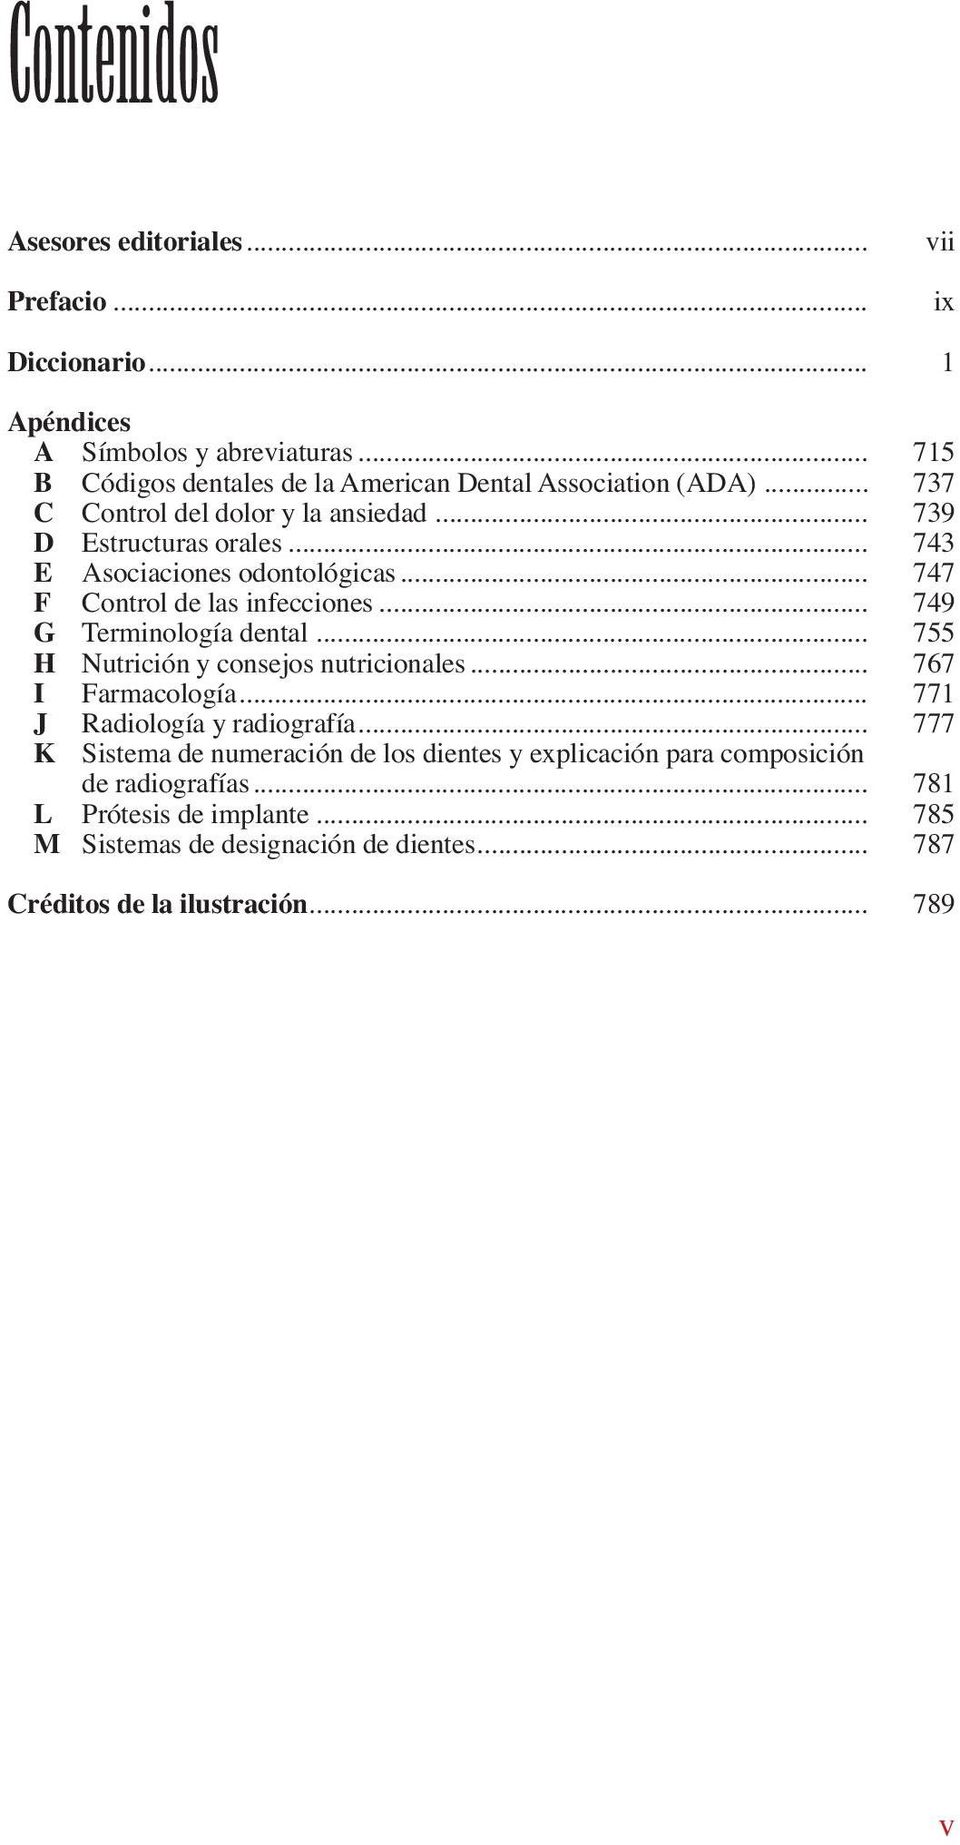 .. 743 E Asociaciones odontológicas... 747 F Control de las infecciones... 749 G Terminología dental... 755 H Nutrición y consejos nutricionales.